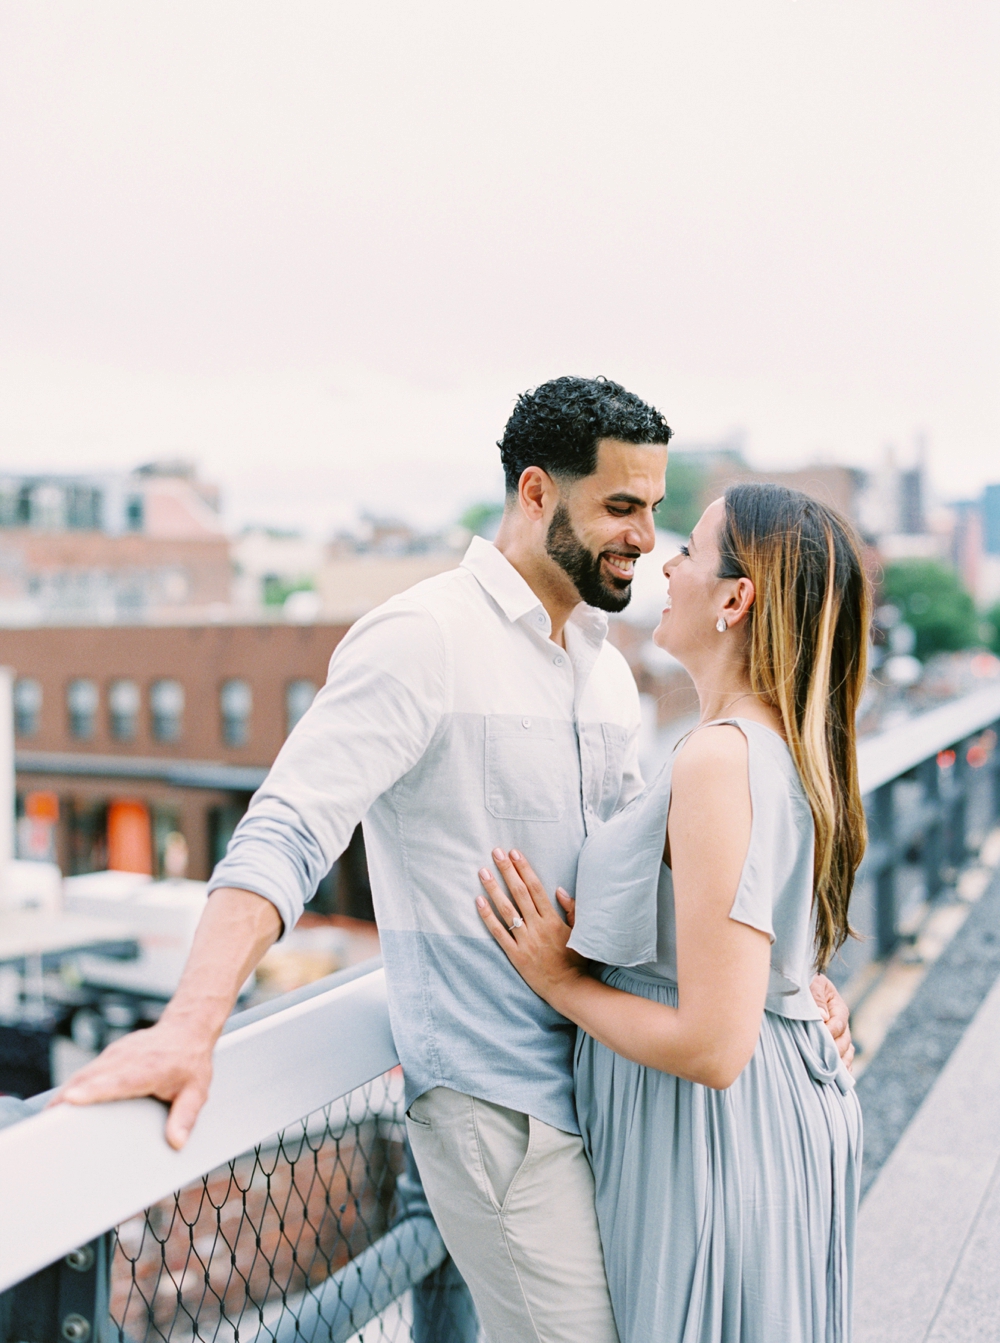 New York City High Line | Engagement Photography | Engagement Session | Amal & Muhamed | NYC Engagement Photos | Calgary Wedding Photographers